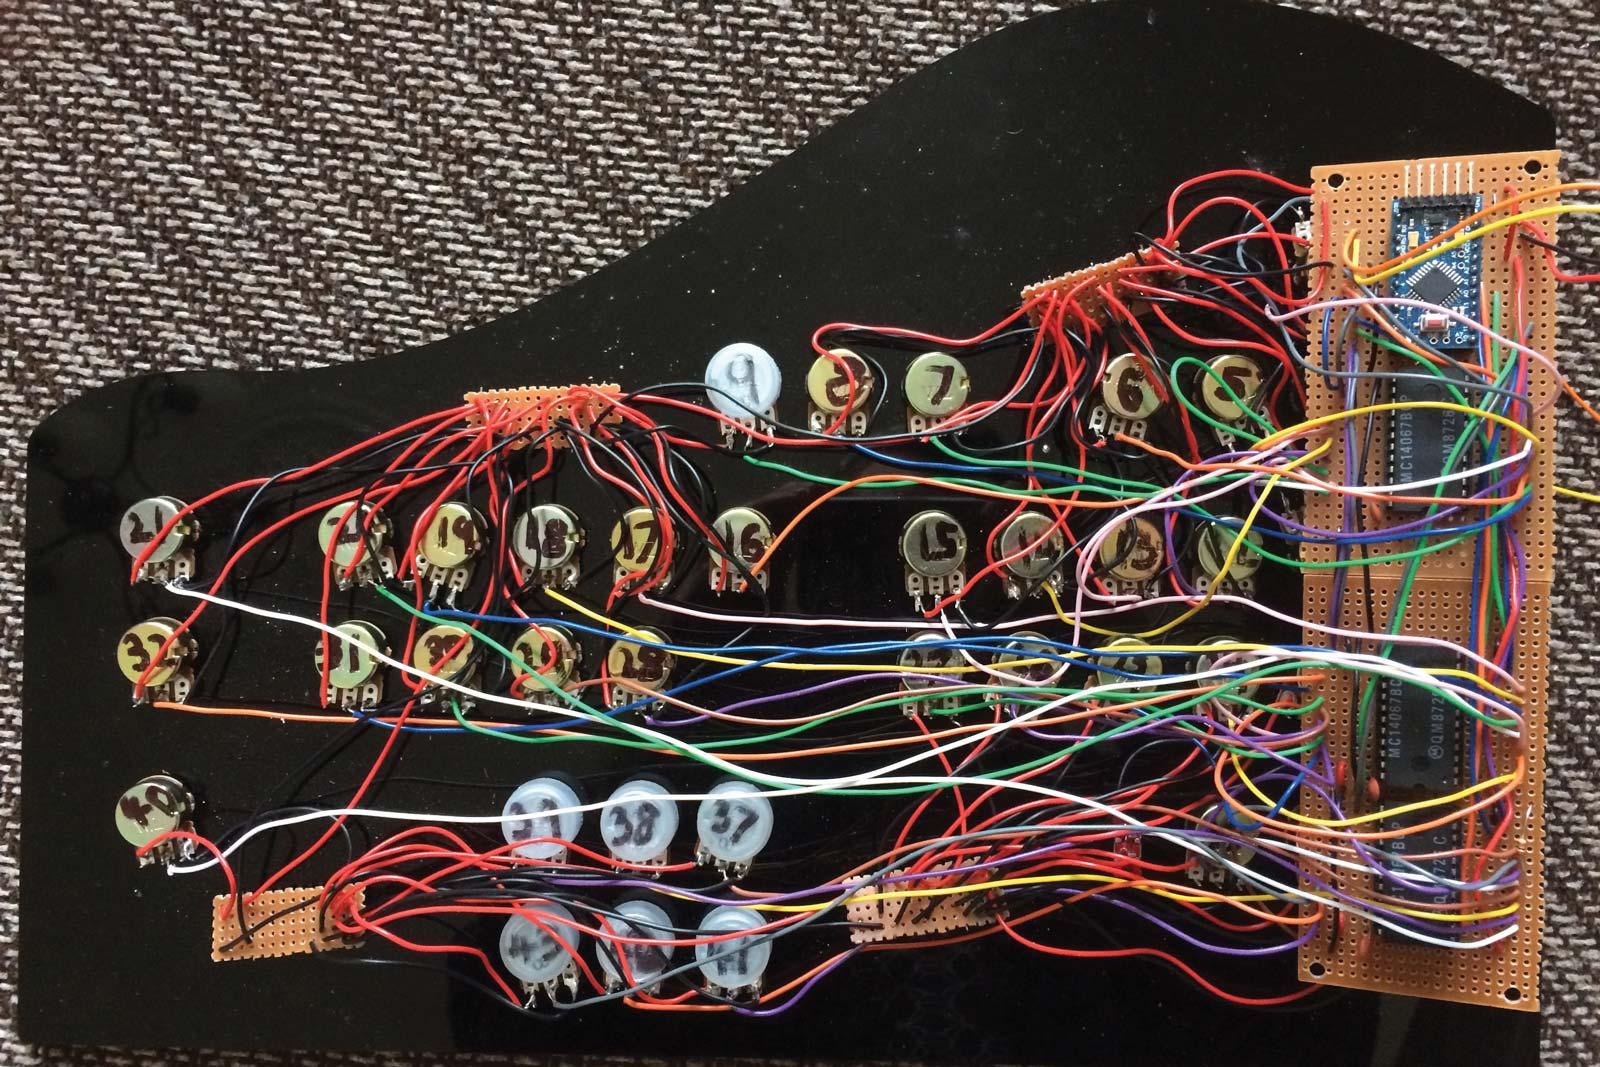 Messy wiring